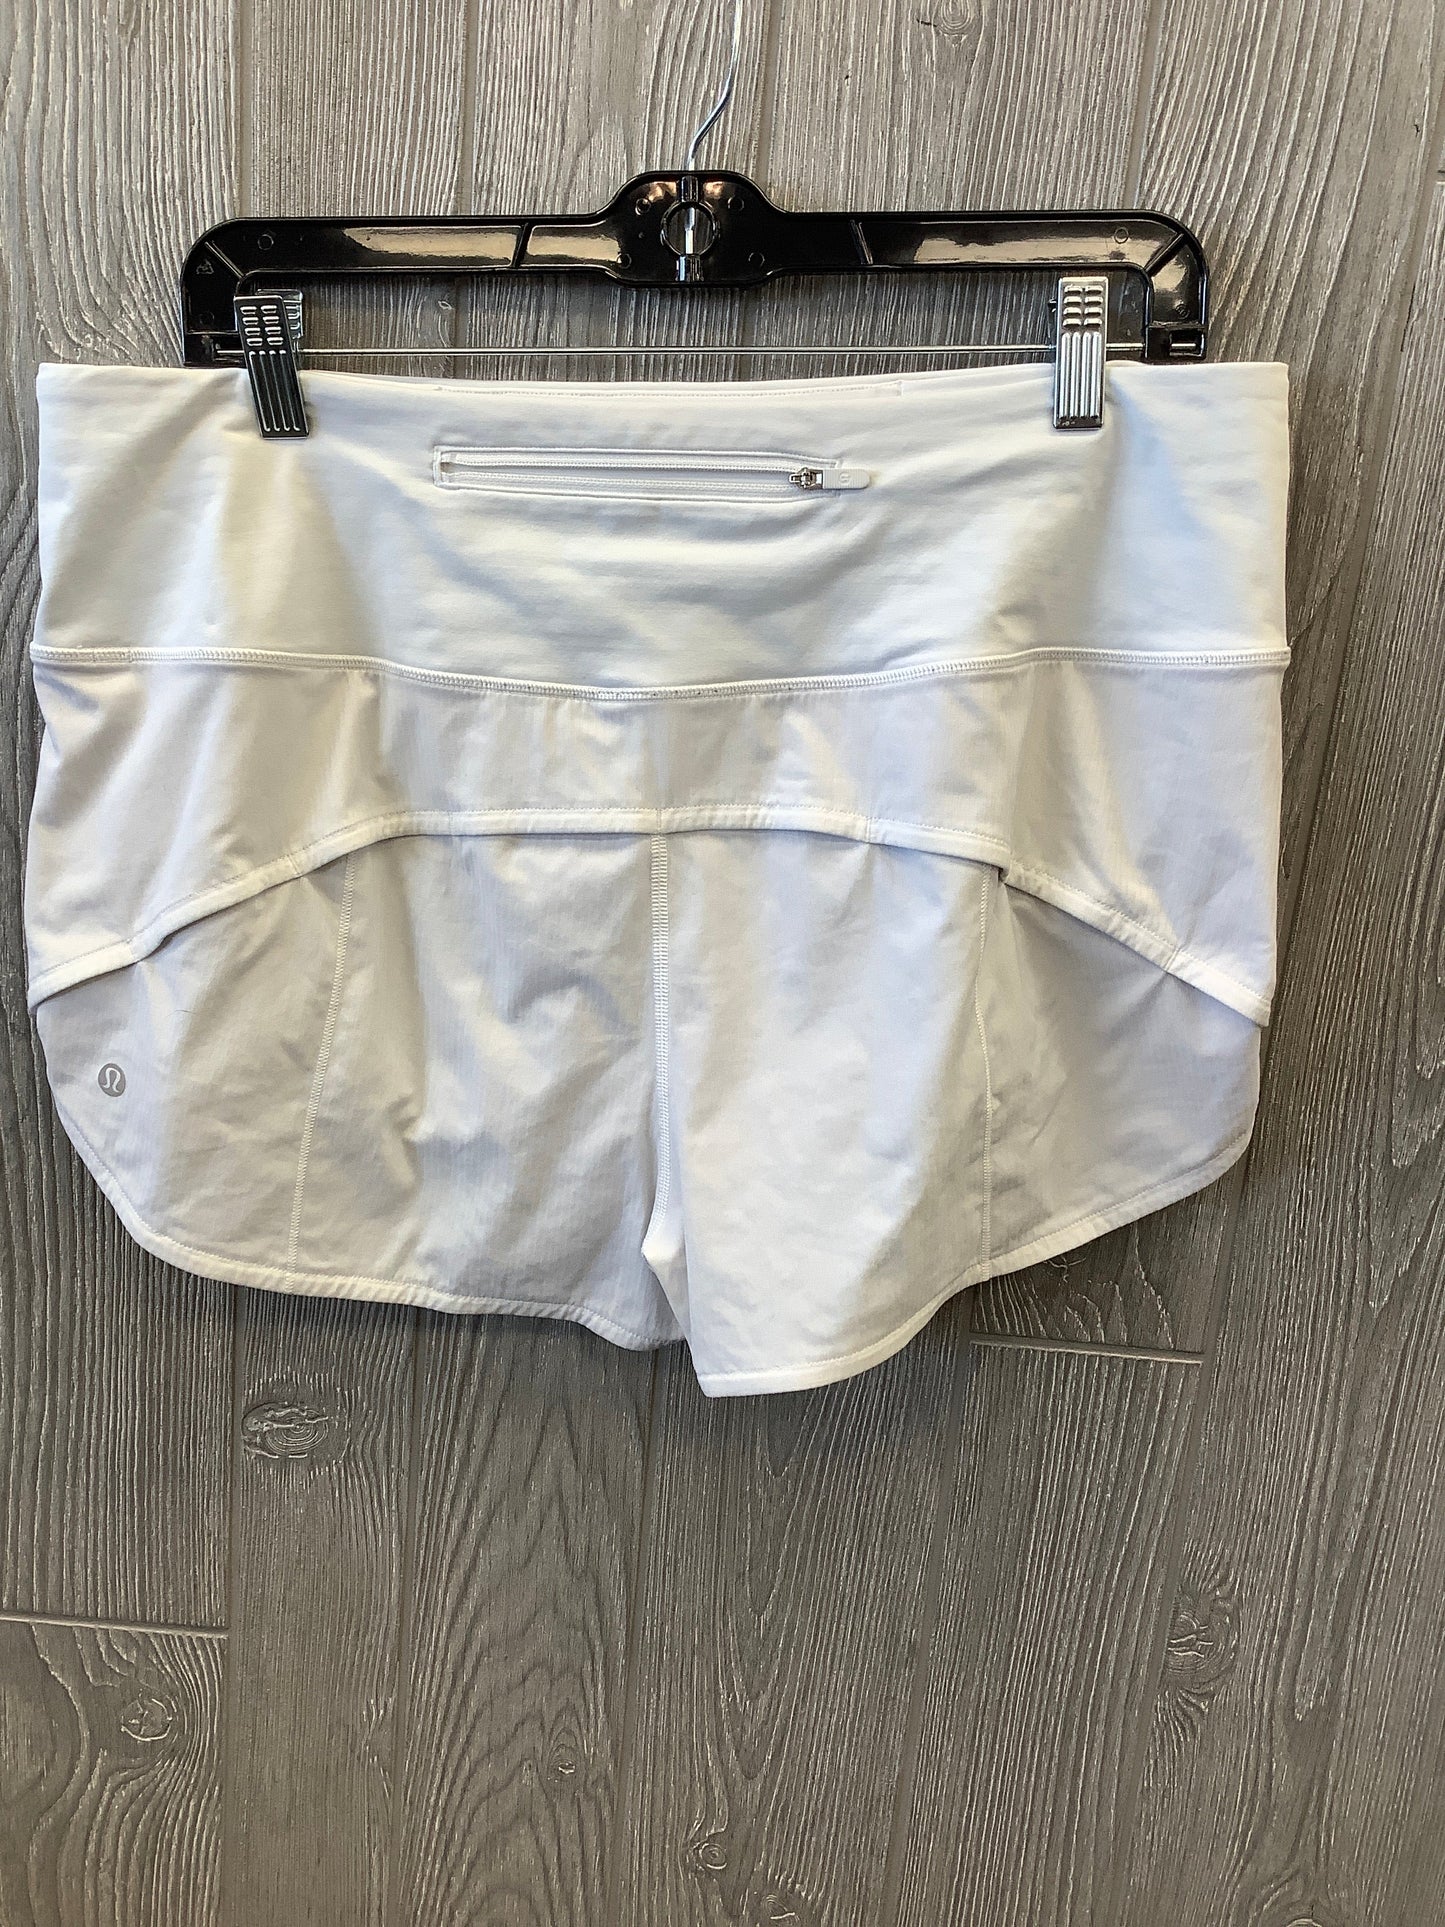 White Athletic Shorts Lululemon, Size 12